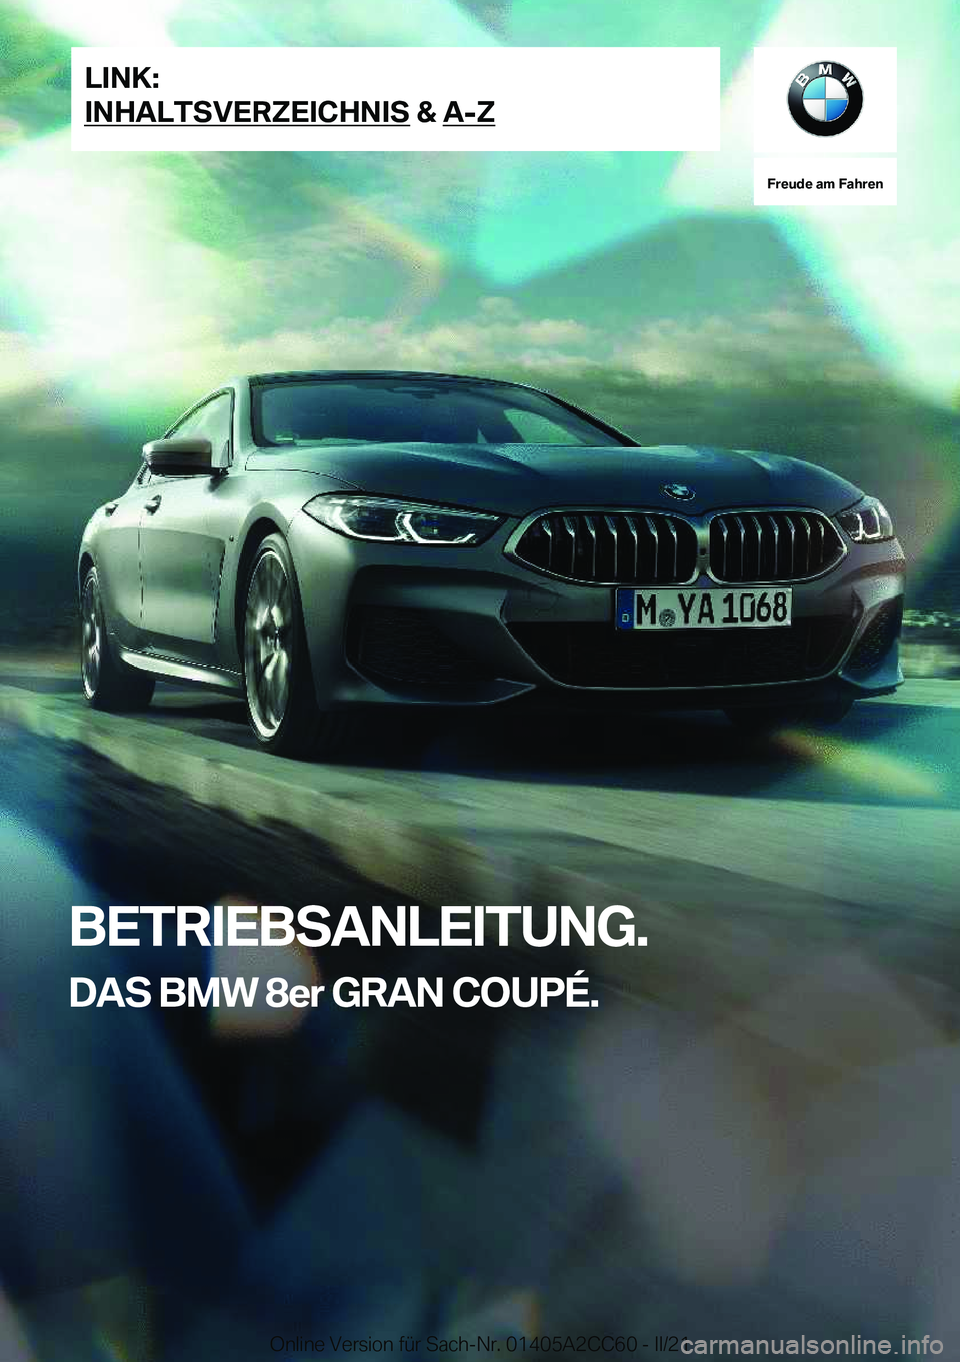 BMW 8 SERIES GRAN COUPE 2022  Betriebsanleitungen (in German) �F�r�e�u�d�e��a�m��F�a�h�r�e�n
�B�E�T�R�I�E�B�S�A�N�L�E�I�T�U�N�G�.�D�A�S��B�M�W��8�e�r��G�R�A�N��C�O�U�P�